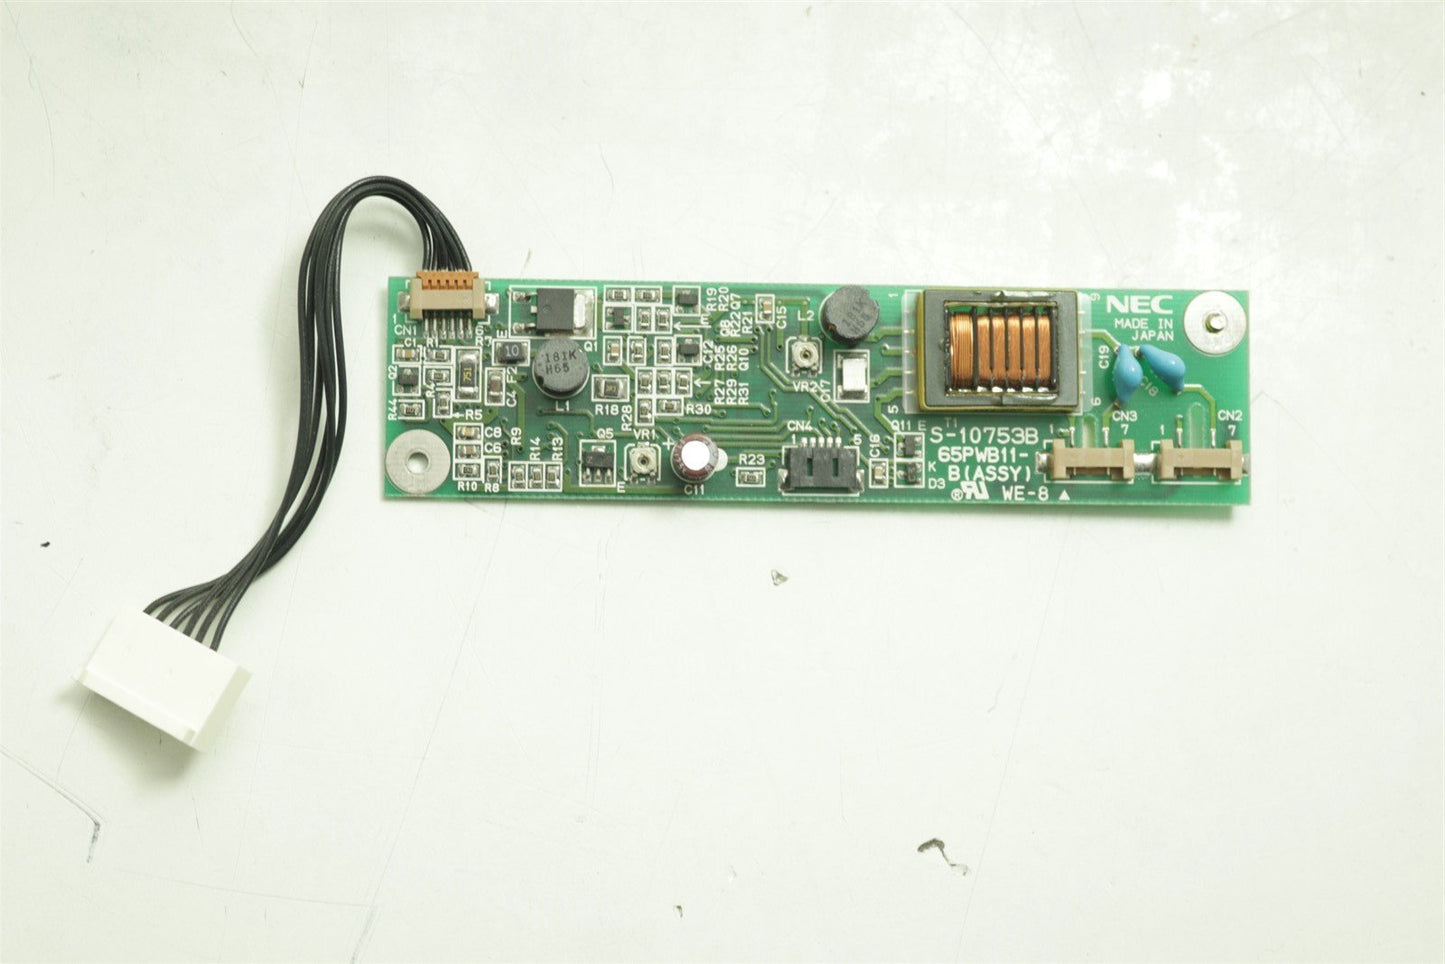 NEC S-10753B LCD Inverter Board PCB